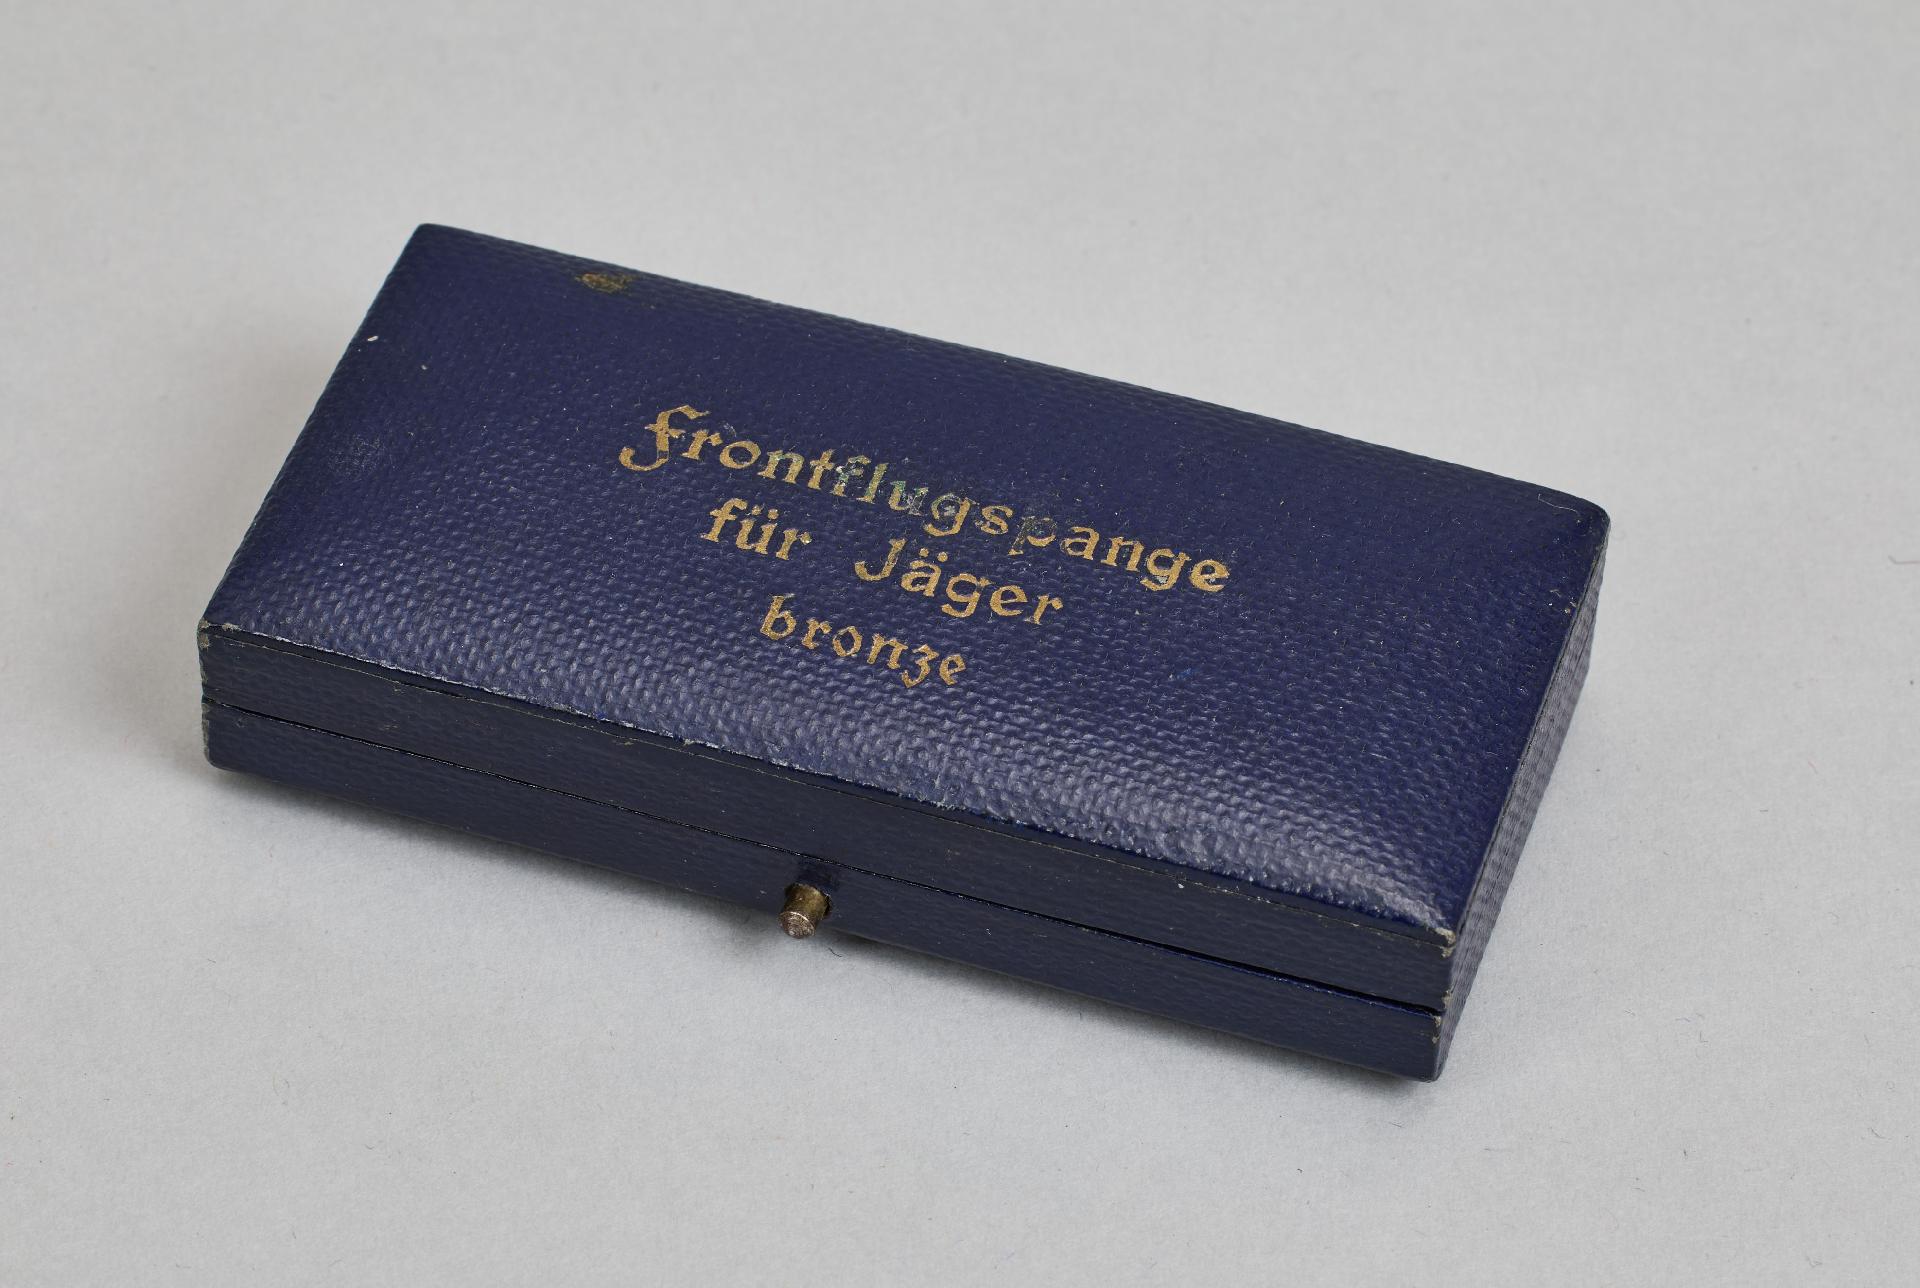 Luftwaffe Awards & Decorations : Frontflugspange für Jäger in Bronze. - Image 2 of 5